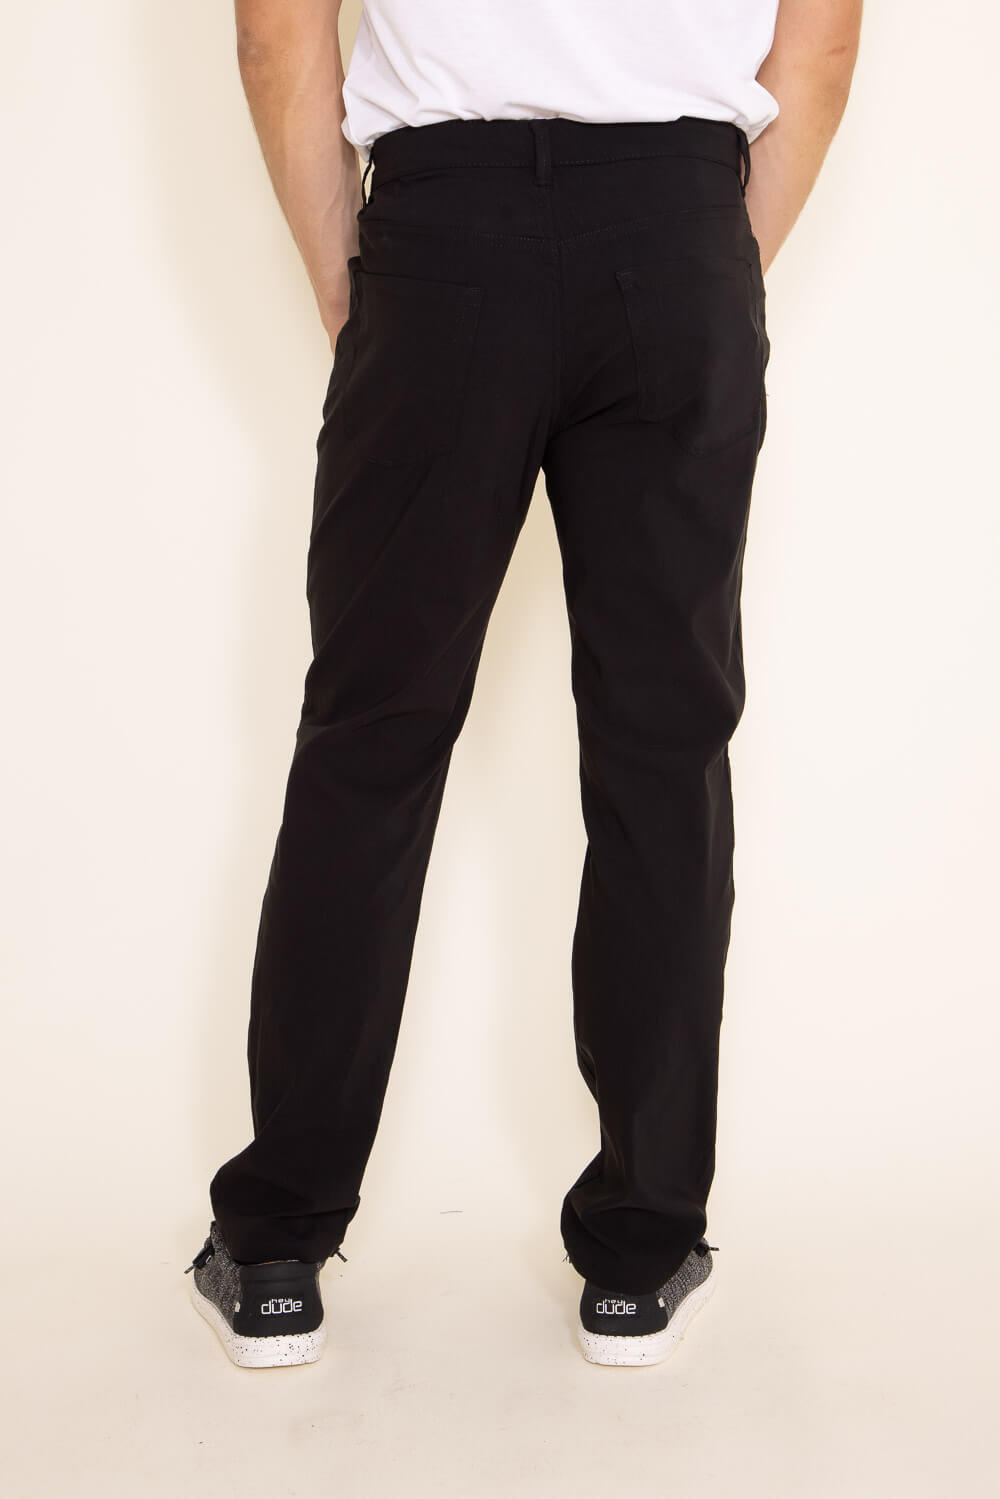 Weatherproof Vintage Lewis Performance Pants for Men in Black (Spring –  Glik's